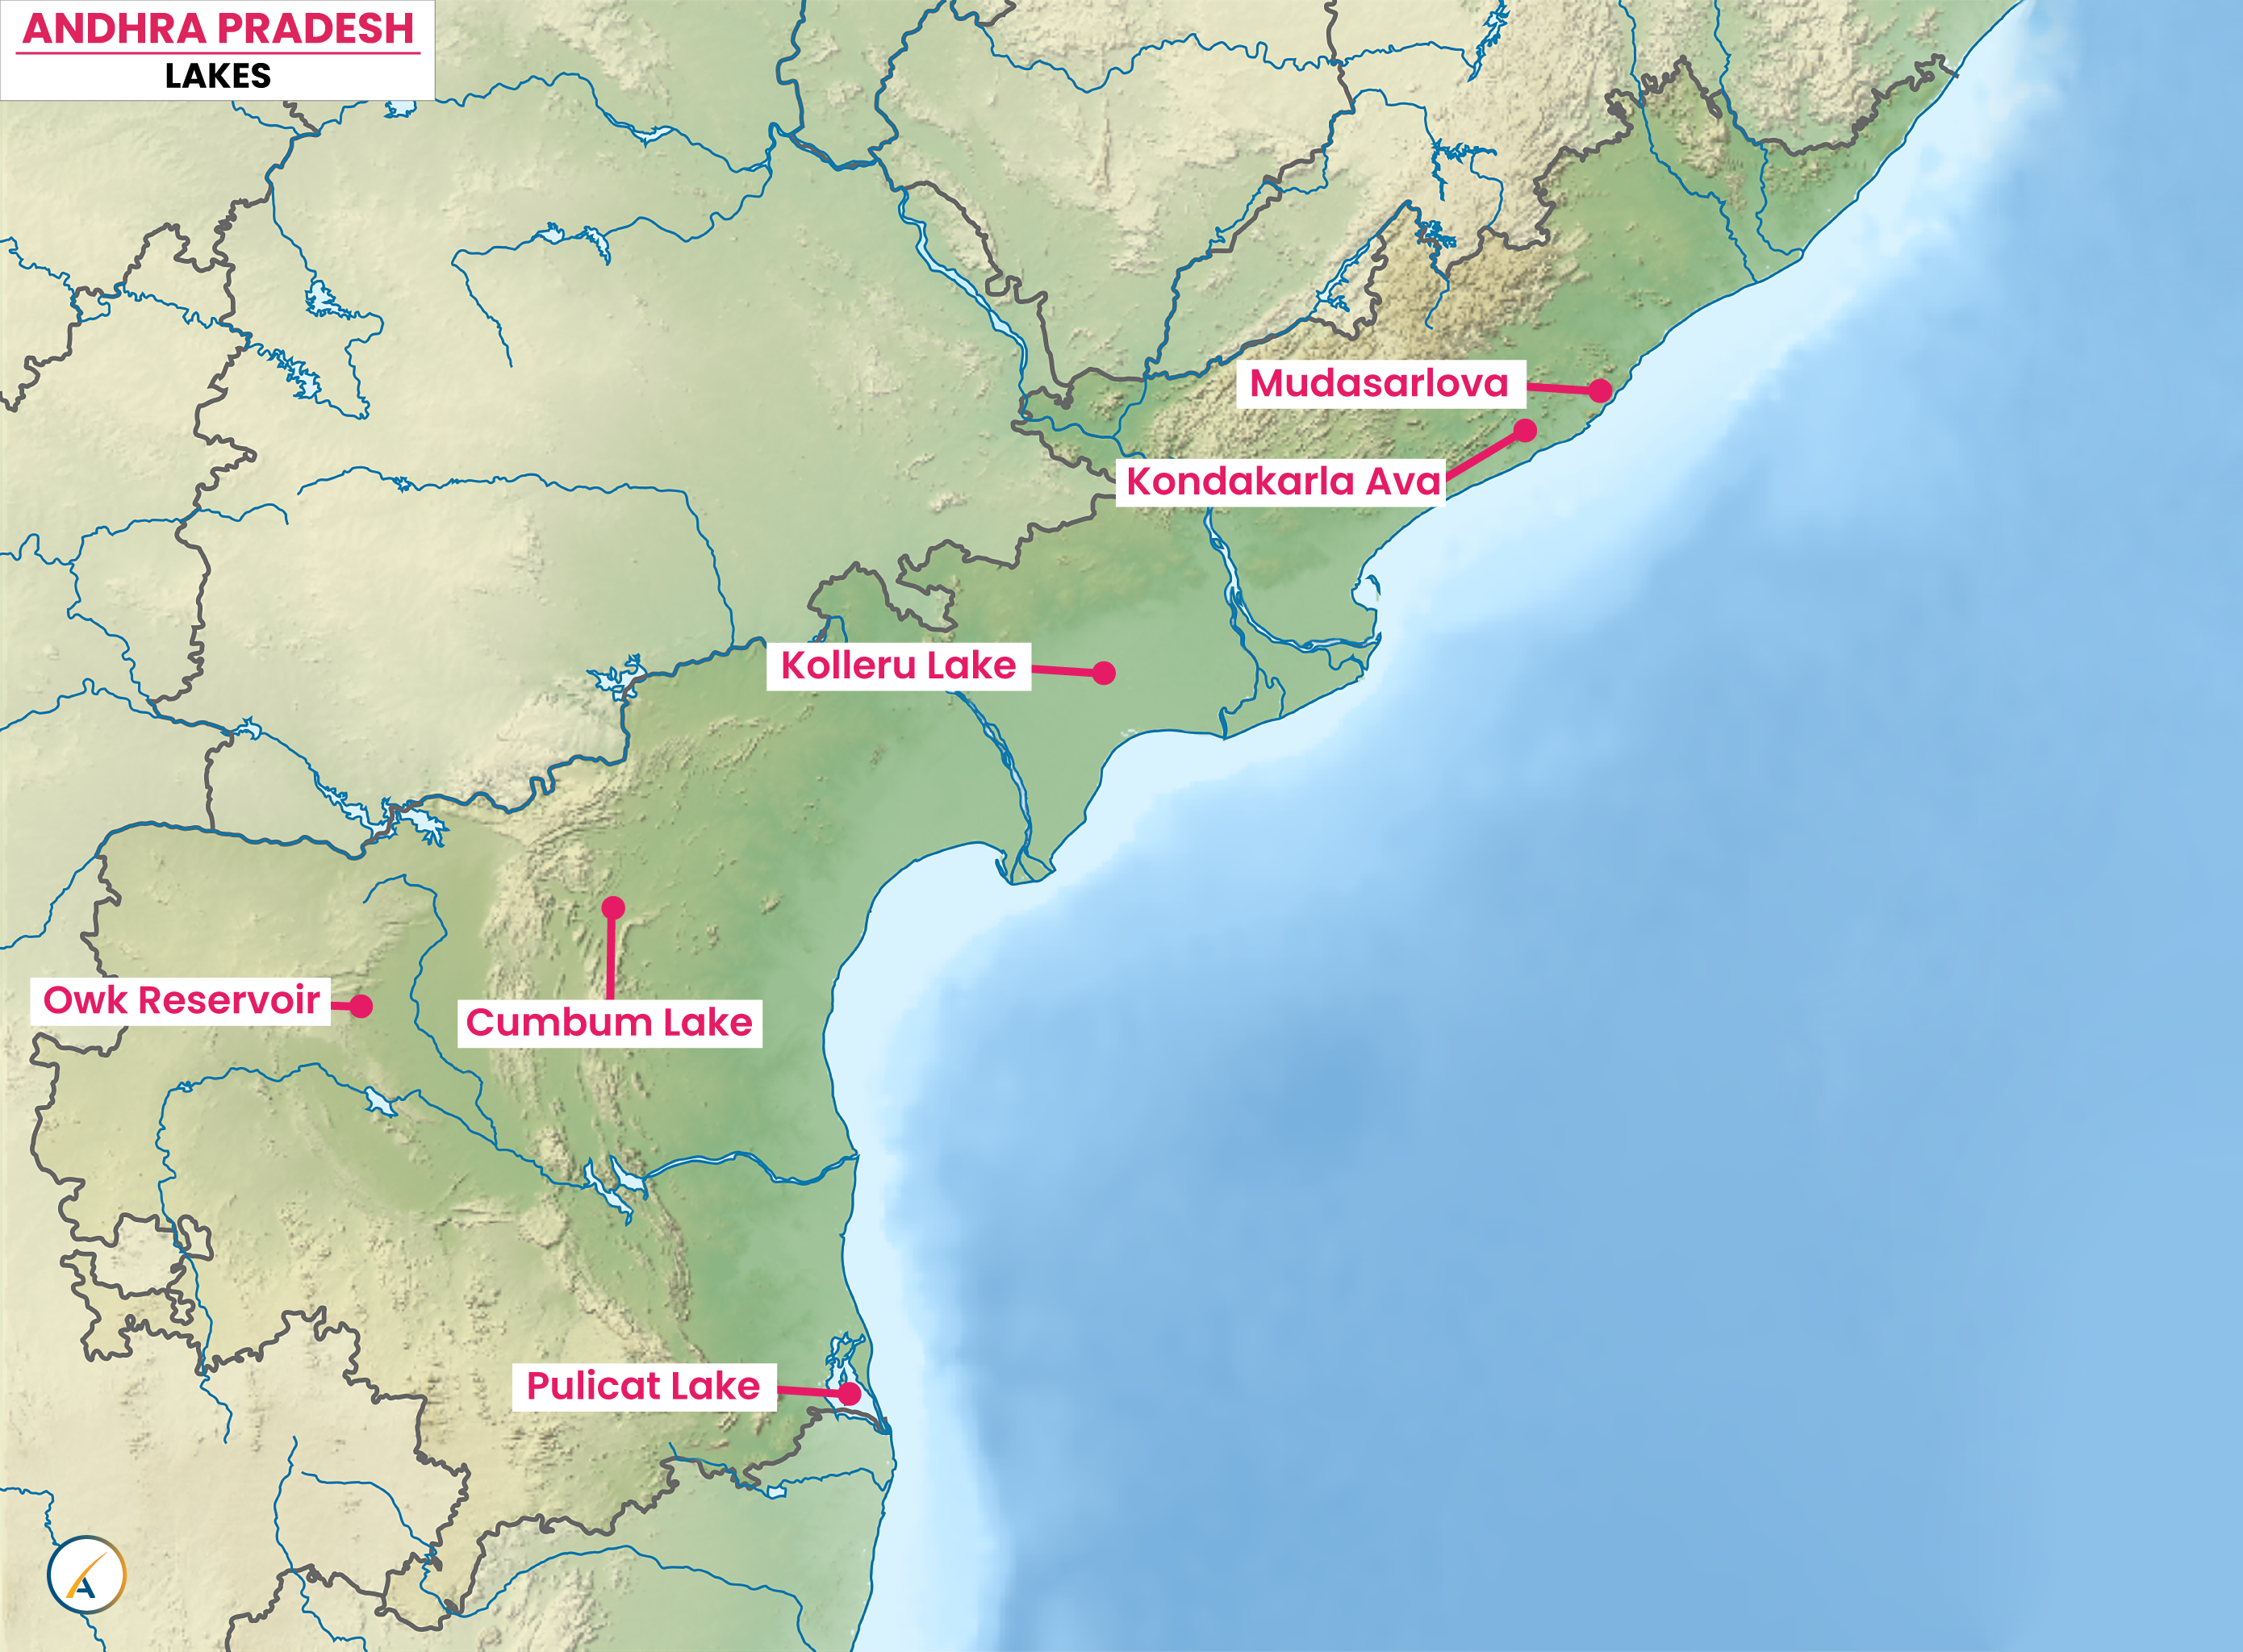 Lakes in Andhra Pradesh Map